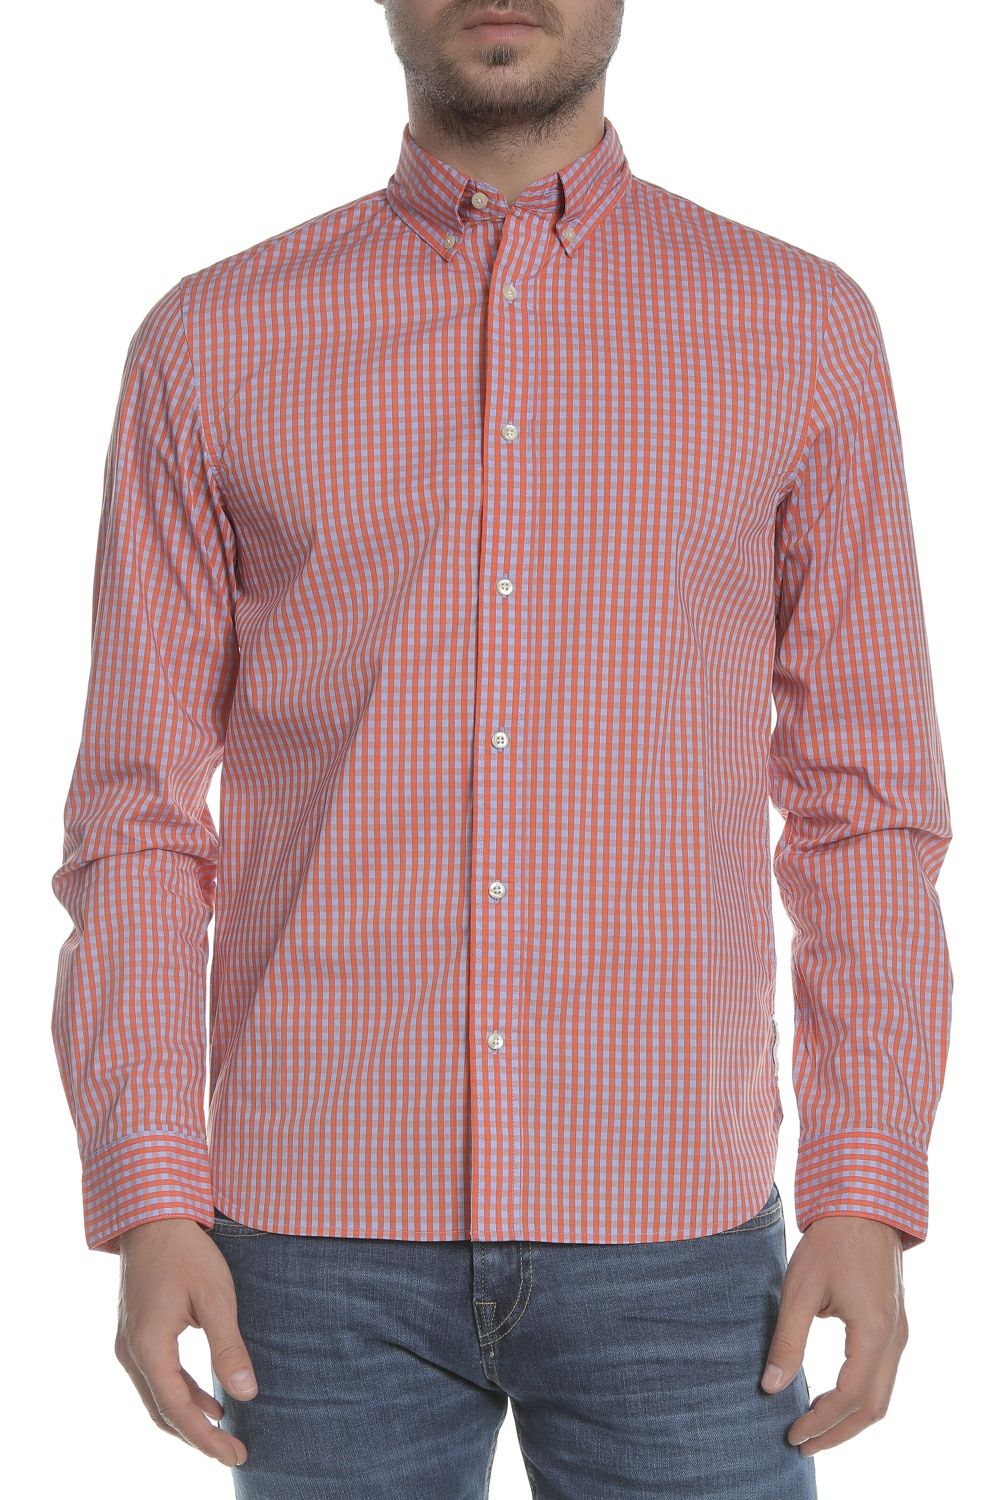 Ανδρικά/Ρούχα/Πουκάμισα/Μακρυμάνικα SCOTCH & SODA - Ανδρικό πουκάμισο REGULAR FIT - Classic BB-check κόκκινο